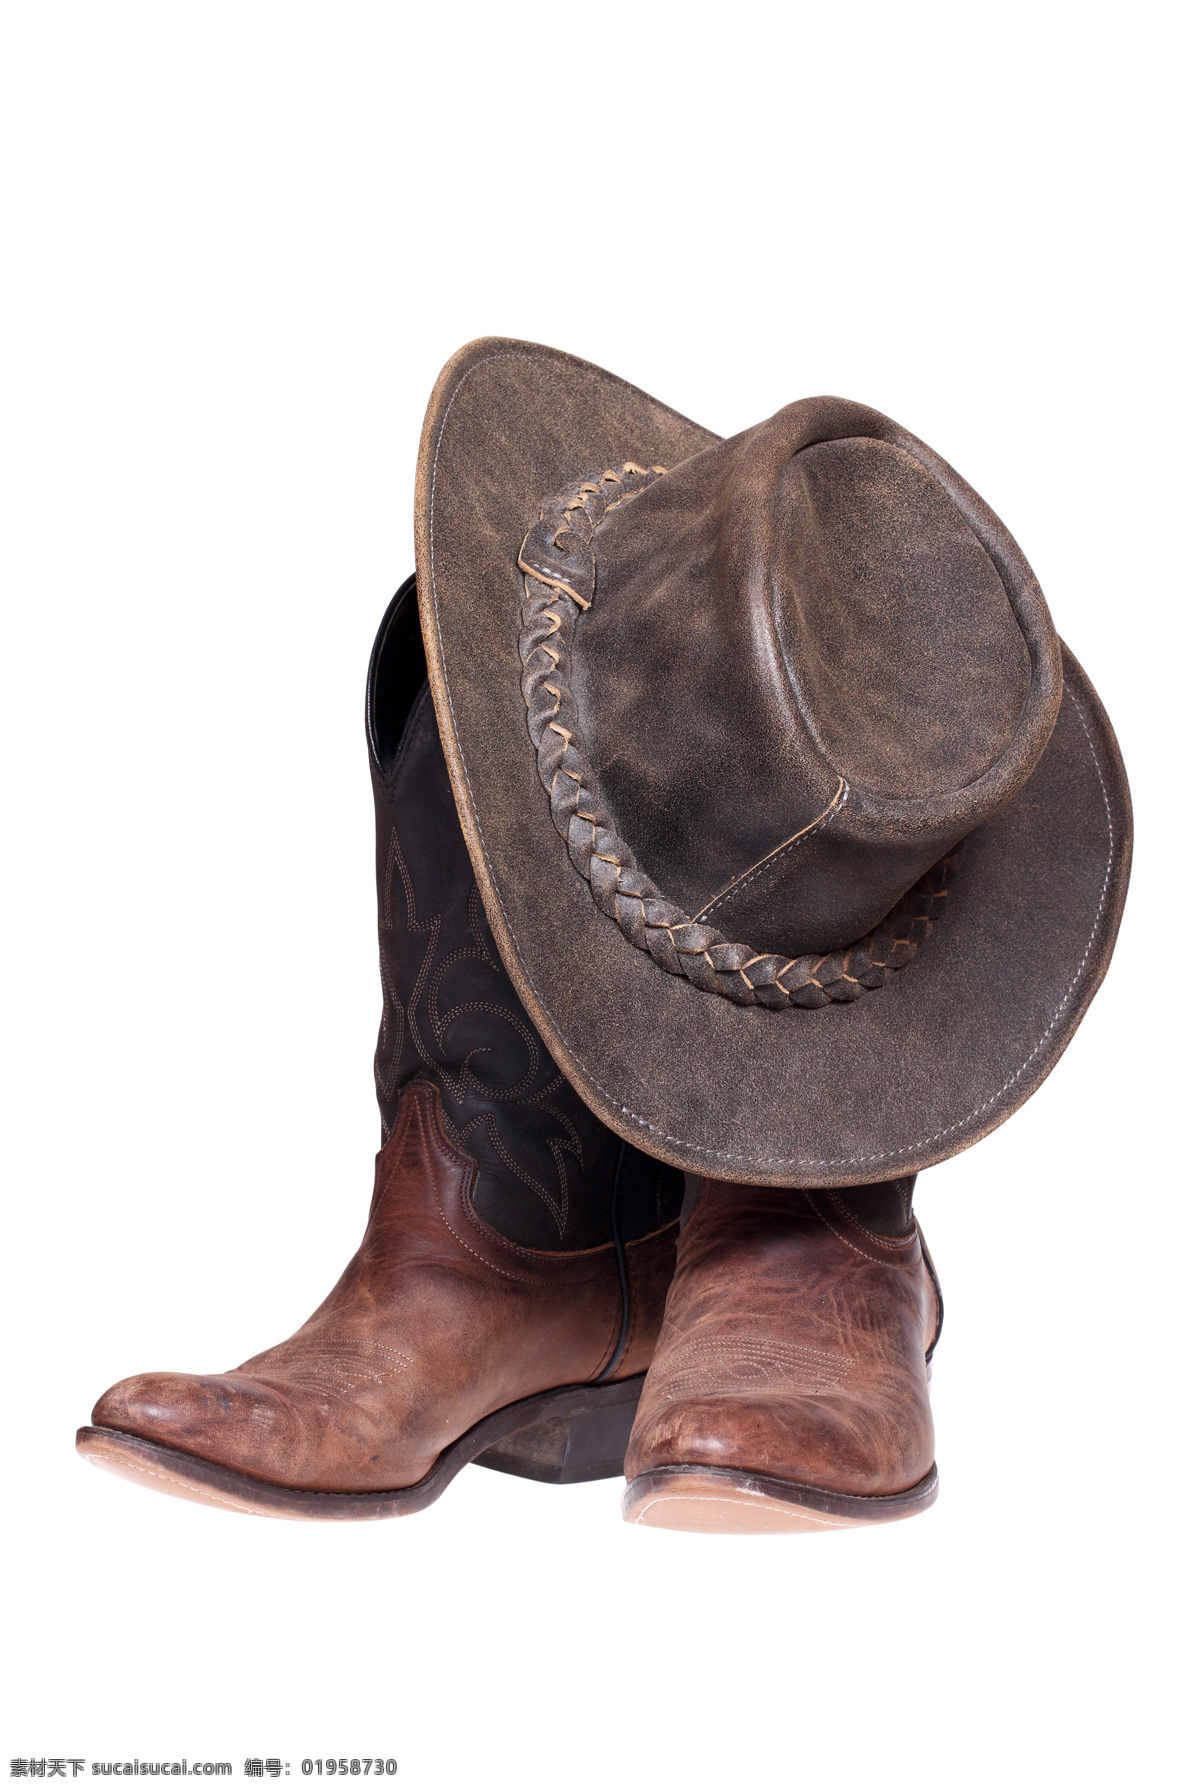 皮帽和皮靴 牛仔风格 皮帽 皮靴 皮革 棕色 牛仔 西部牛仔 美国西部牛仔 其他类别 生活百科 白色